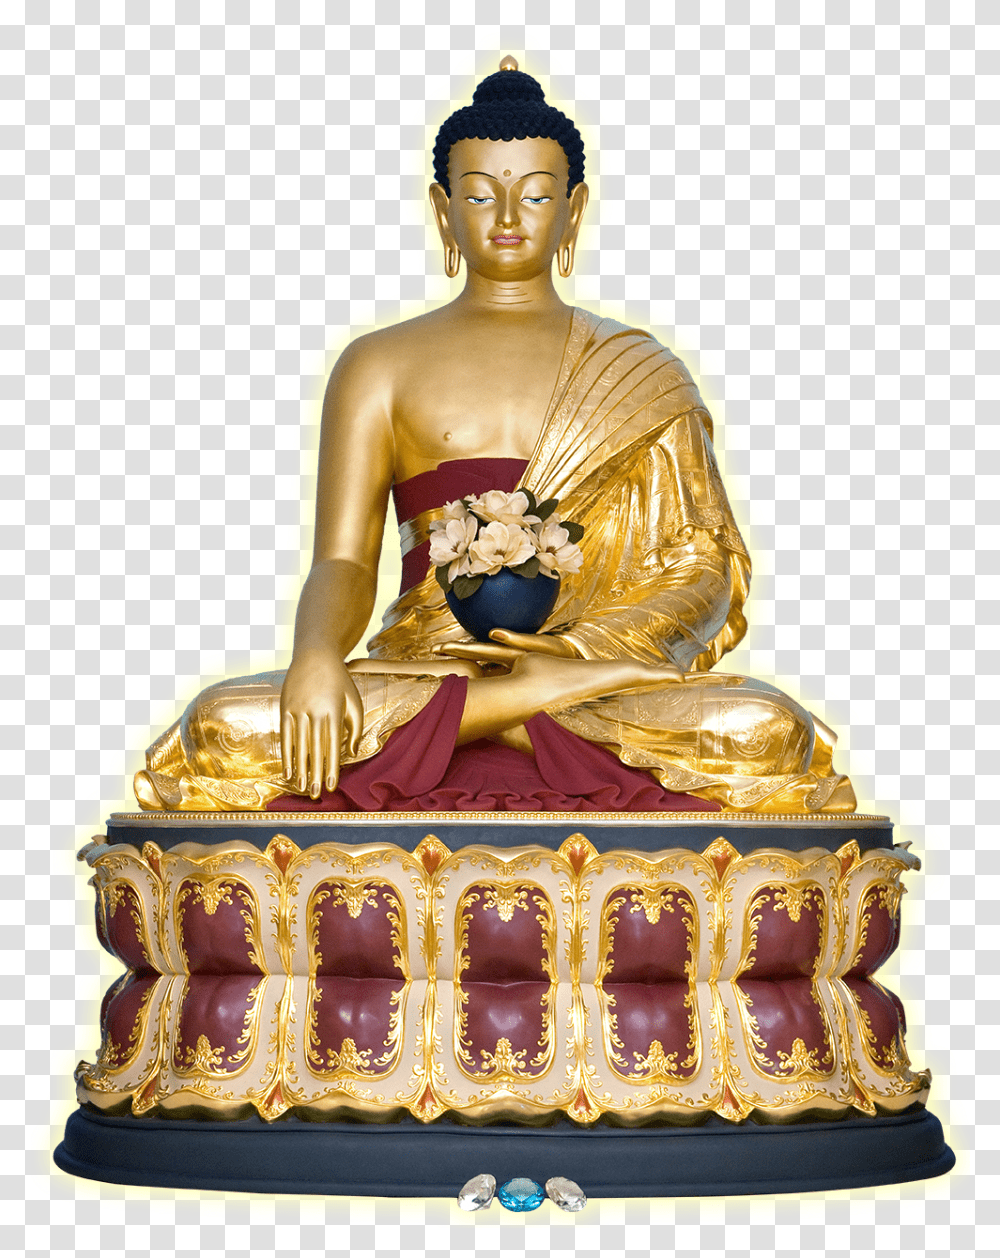 Clip Art As Imagens Sagradas Centro Objetos Sagrados Do Budismo, Worship, Architecture, Building, Buddha Transparent Png